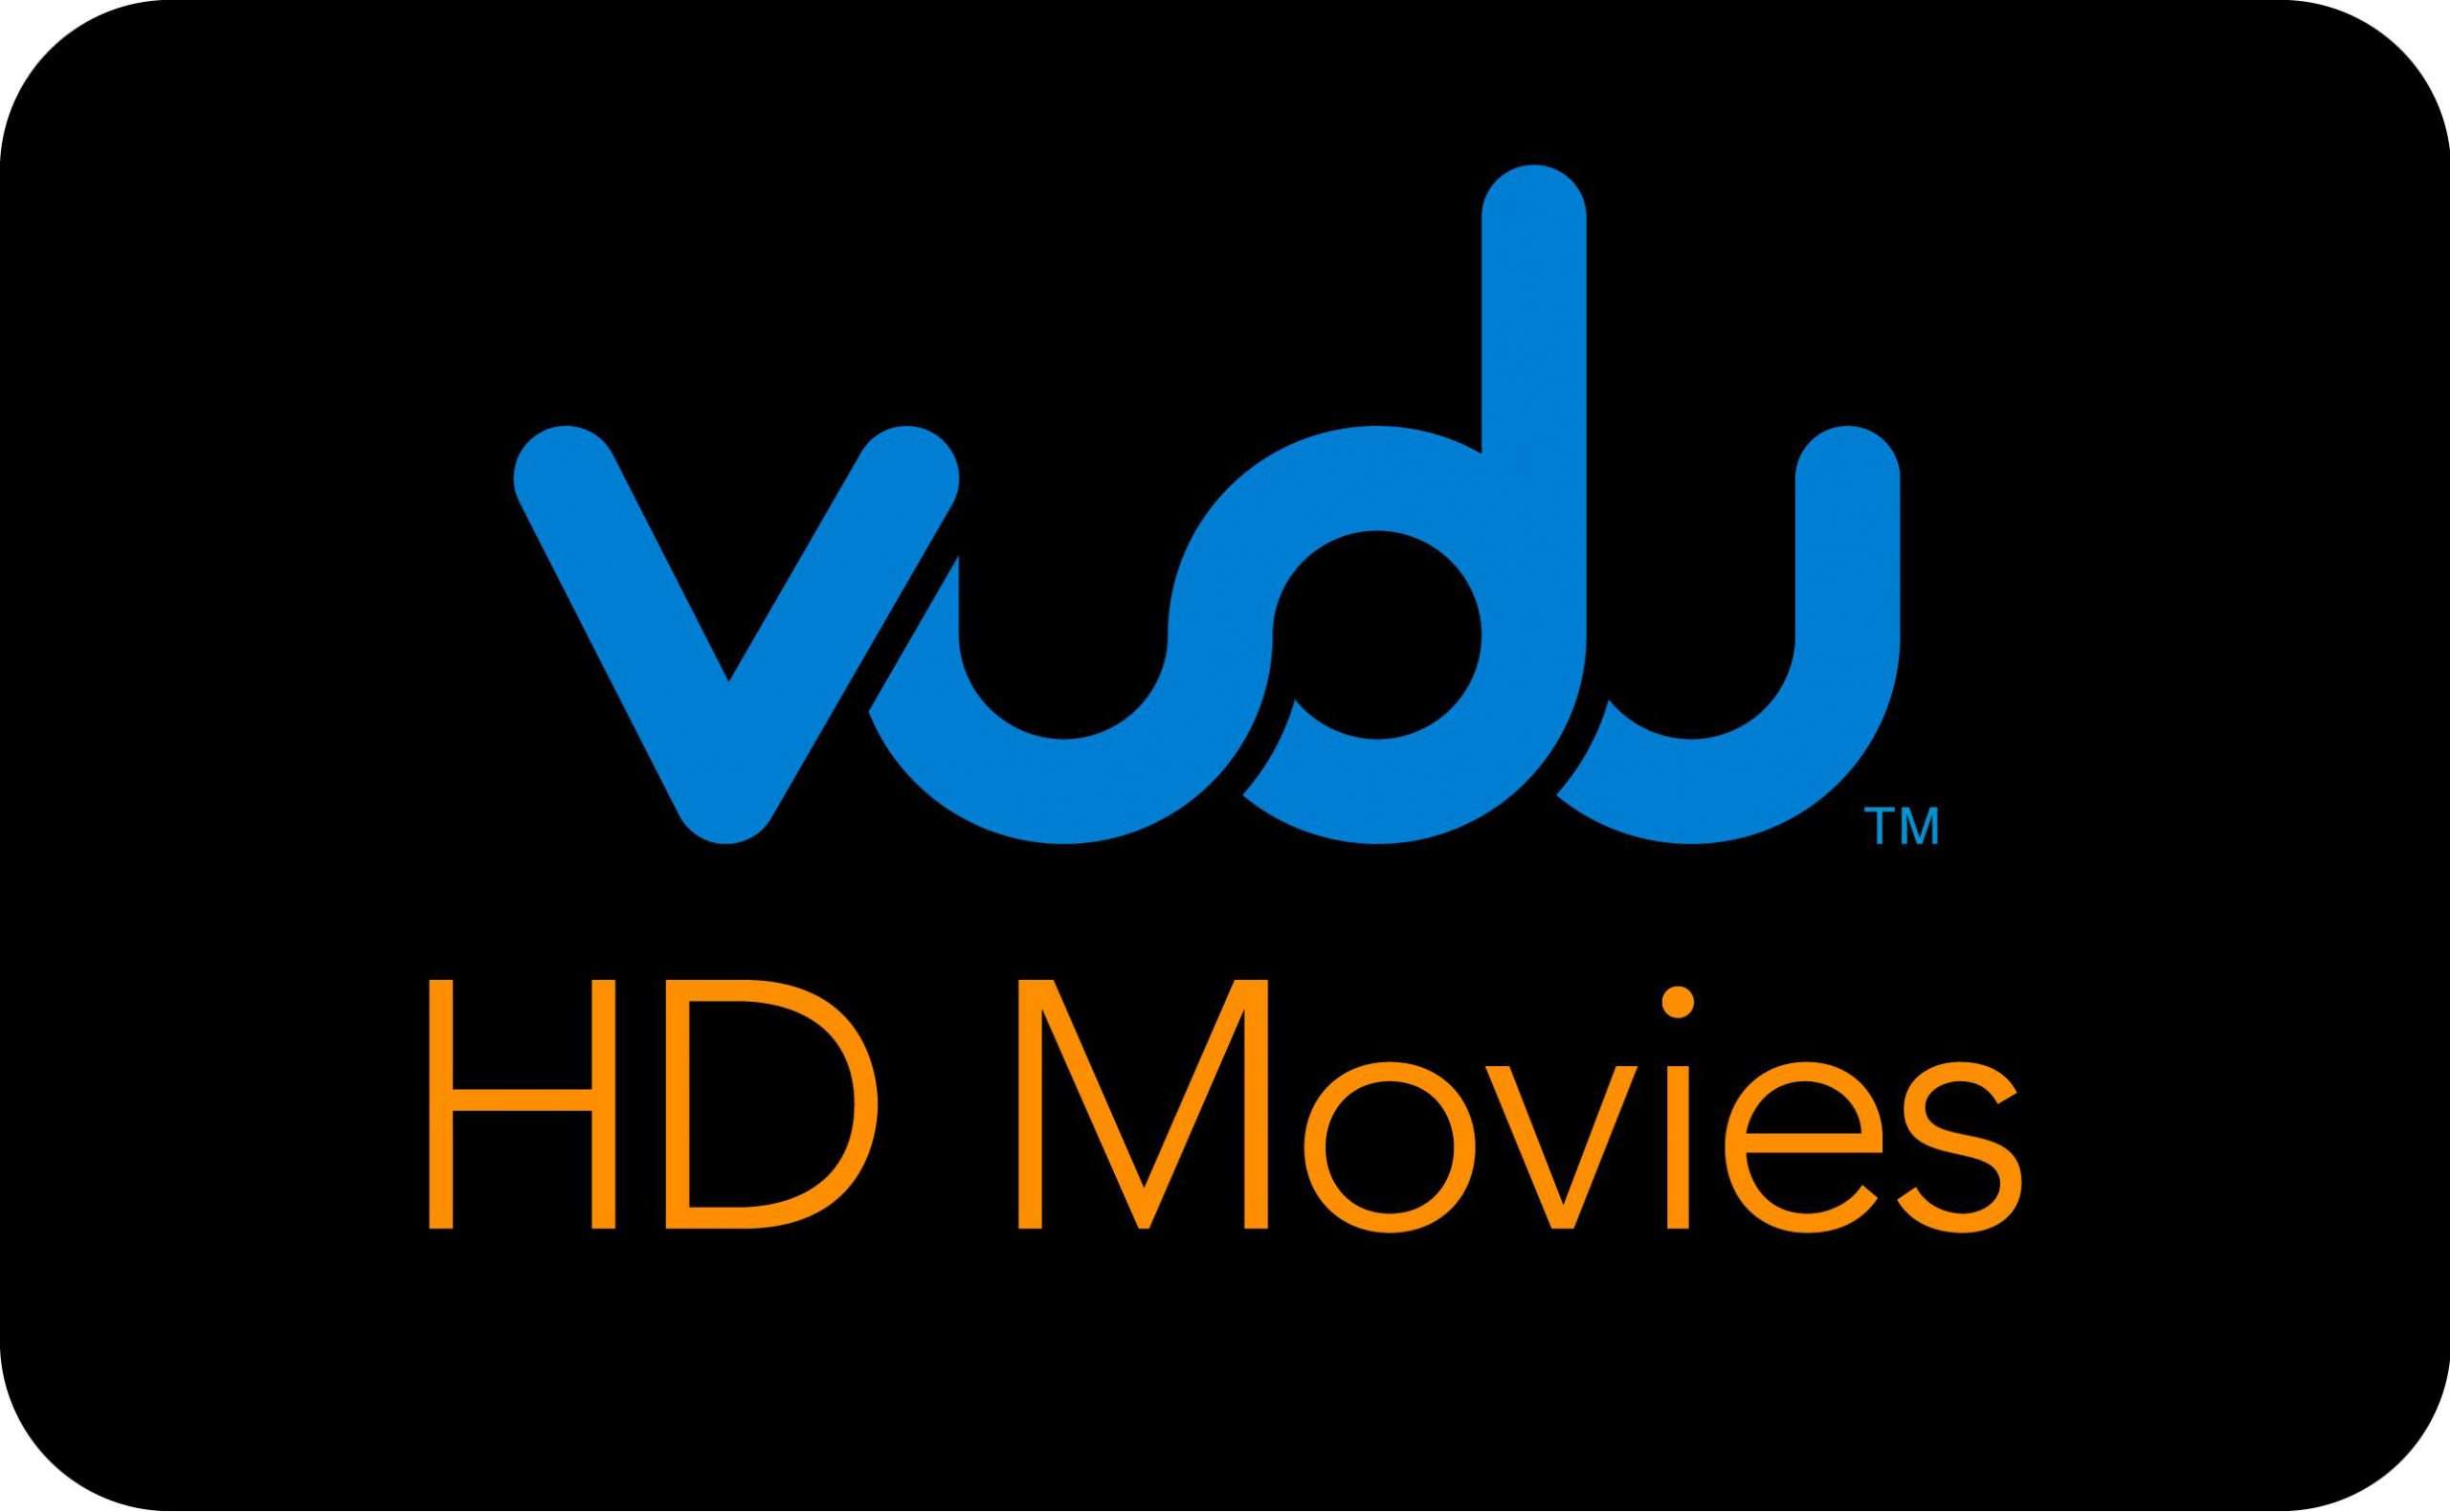 A new Vudu update turns a Spotlight on best movie deals, free content ...